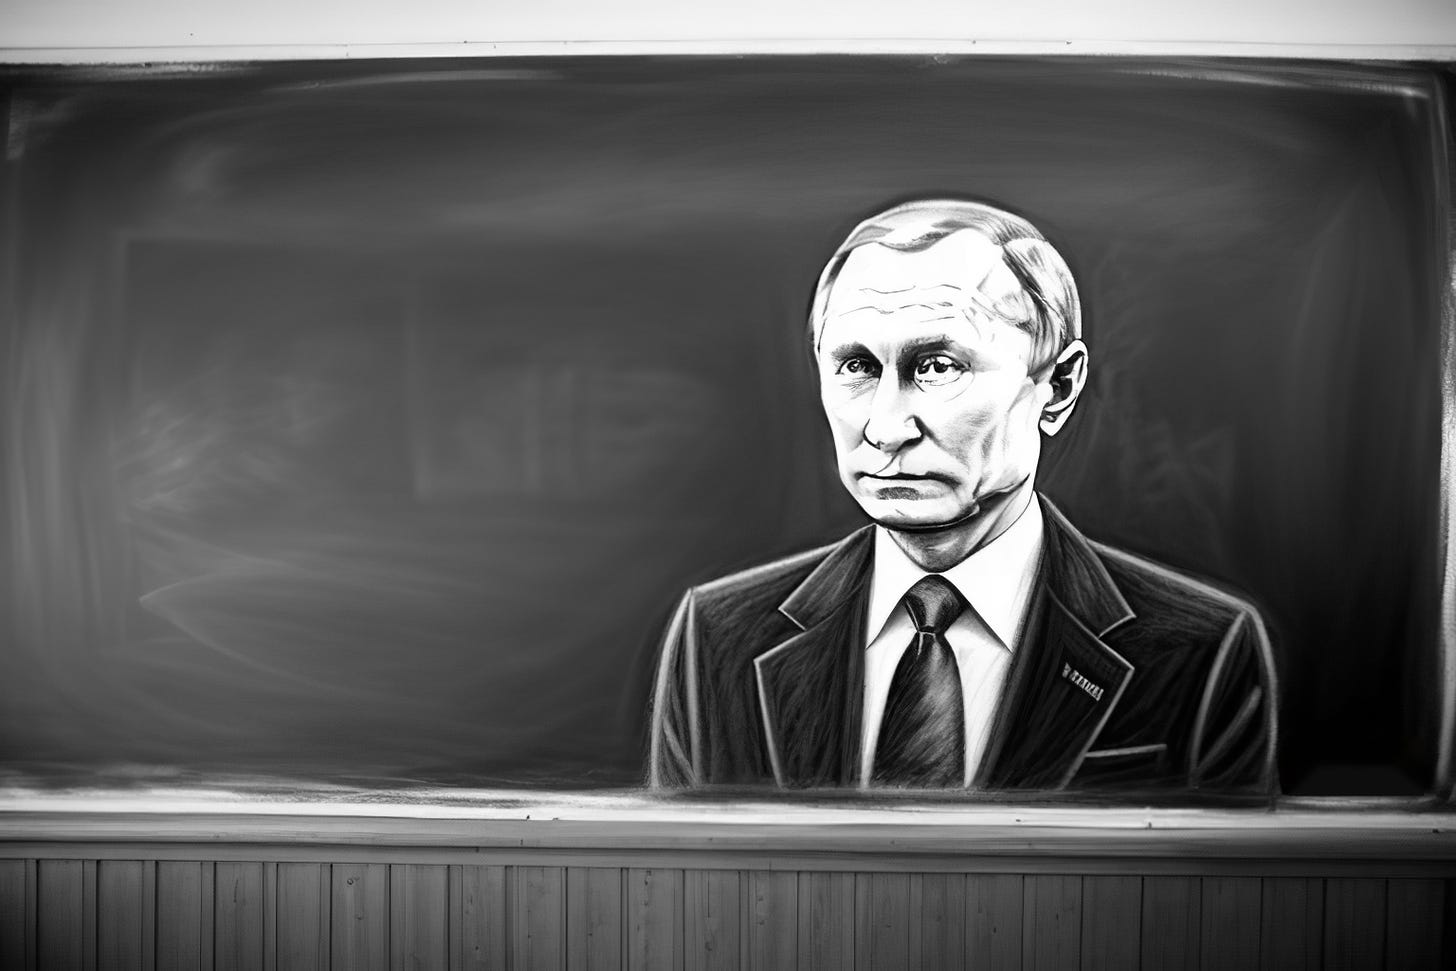 Putin als detaillierte Kreidezeichnung auf einer Schultafel. Das Bild ist schwarz-weiß.